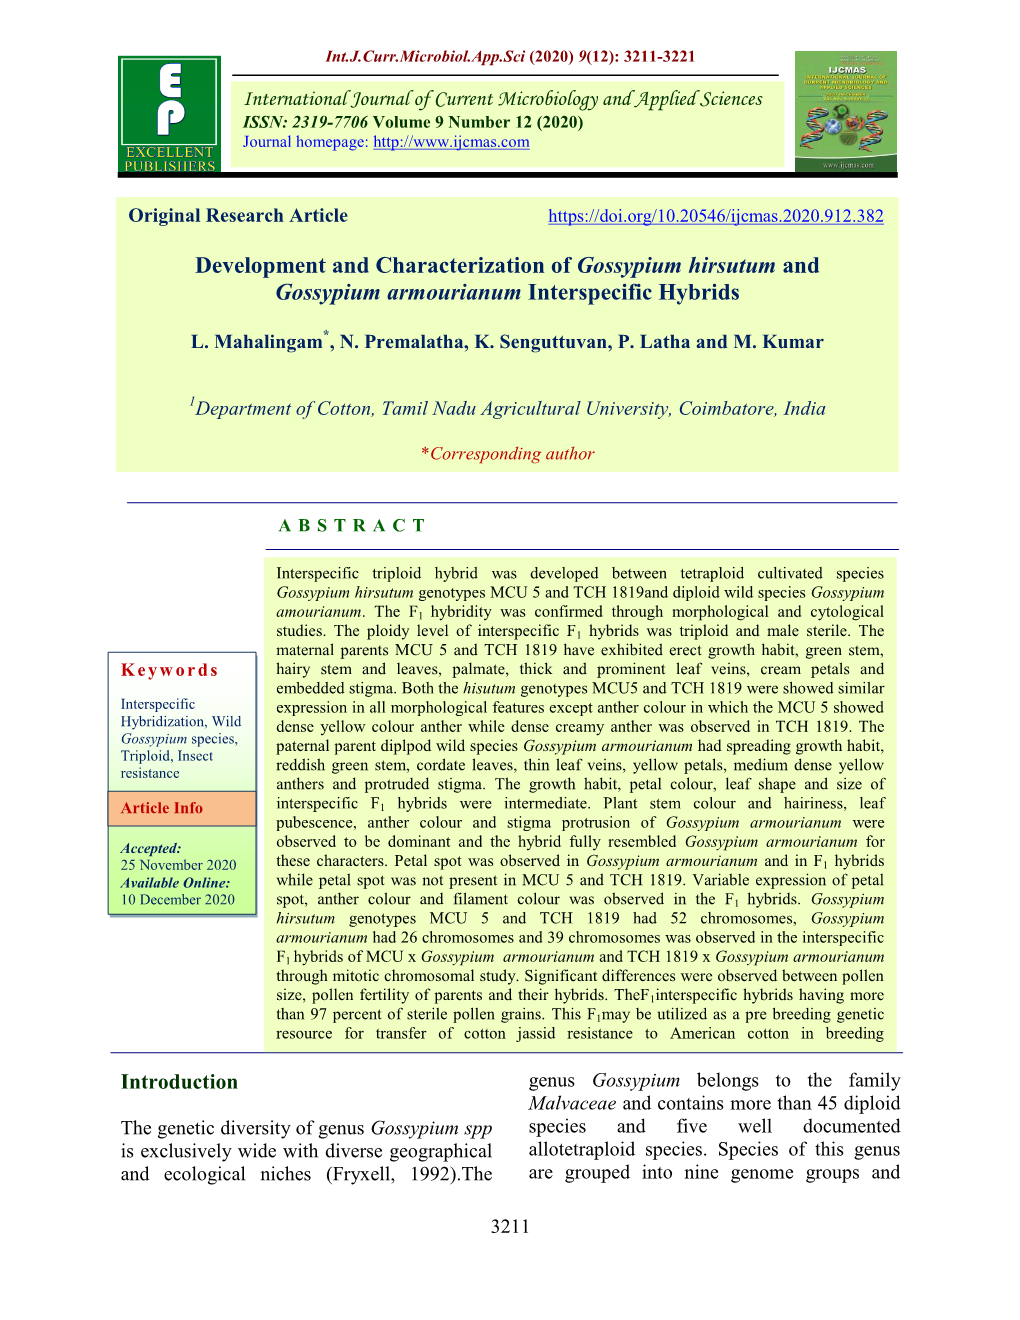 Development and Characterization of Gossypium Hirsutum and Gossypium Armourianum Interspecific Hybrids